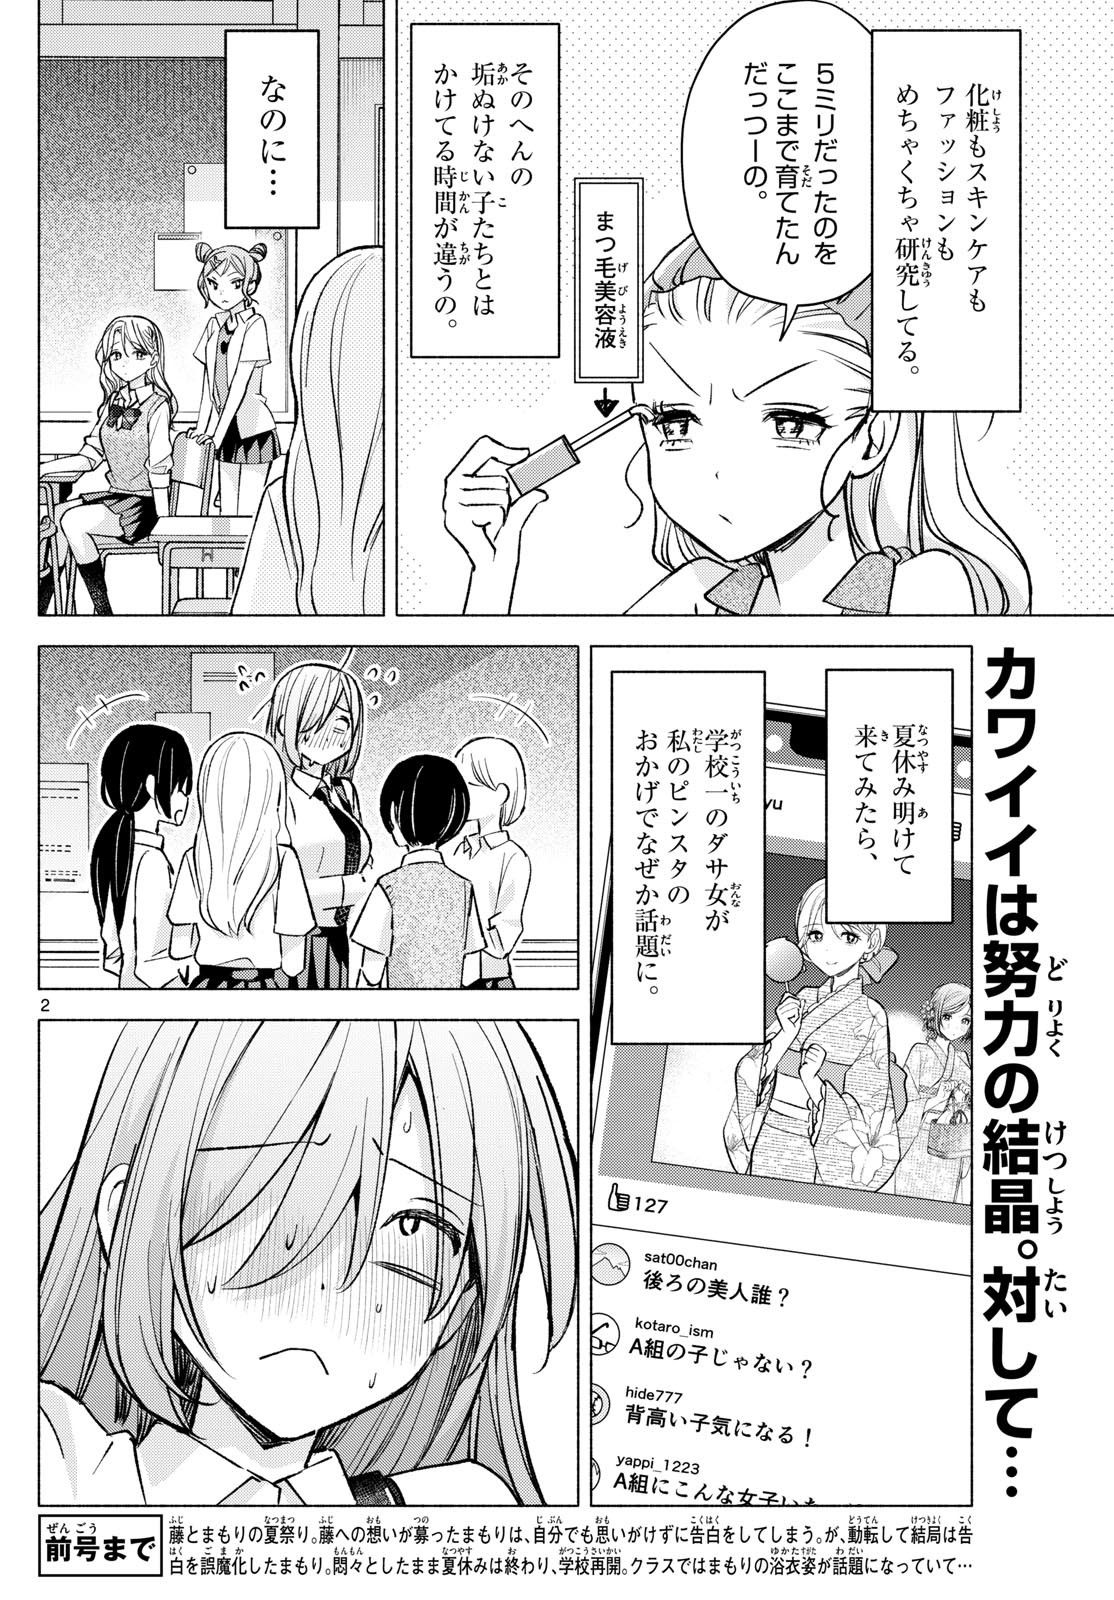 Kimi to Warui Koto ga Shitai - Chapter 052 - Page 2